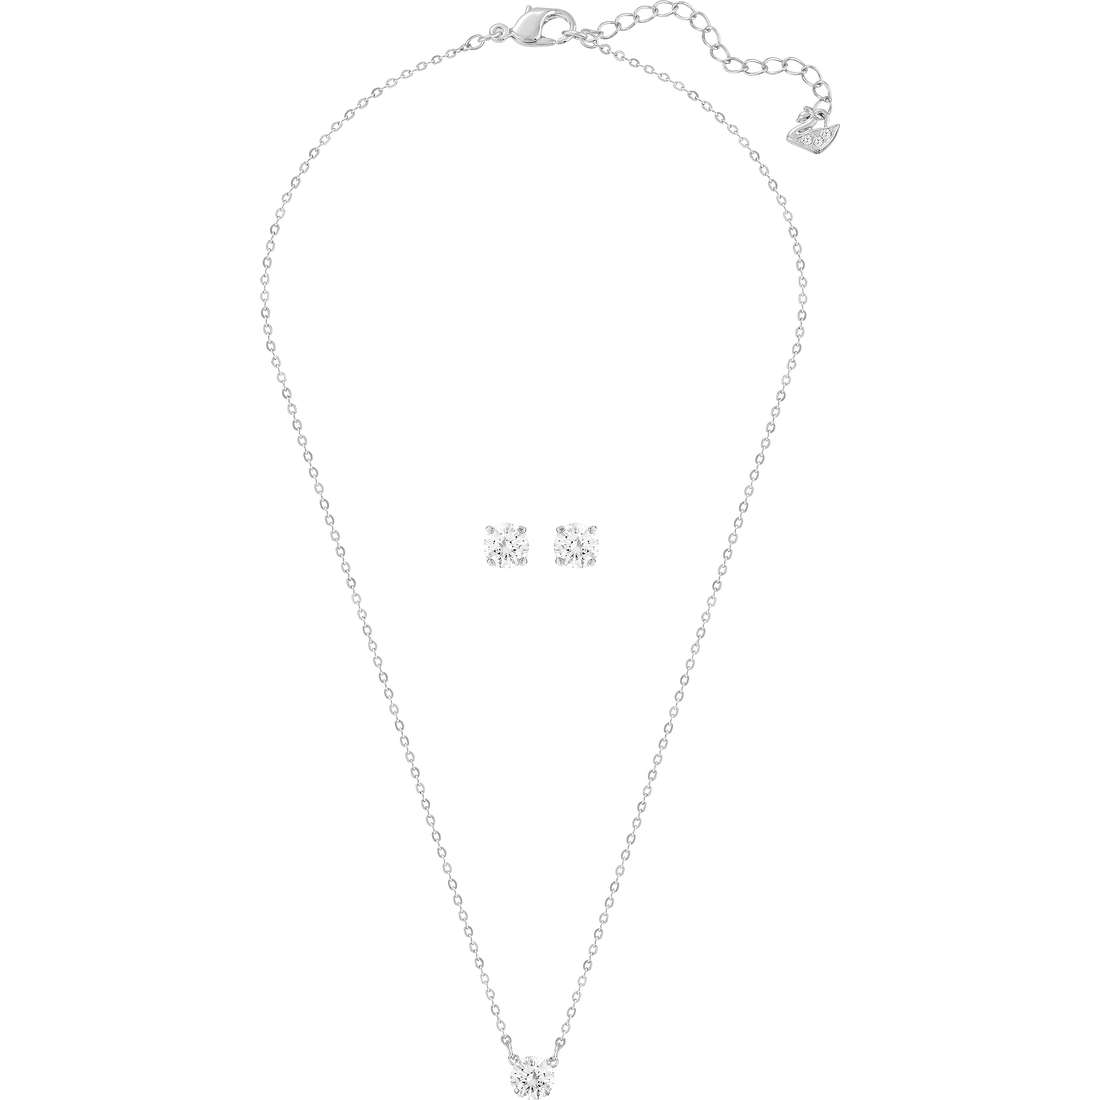 necklace woman jewel Swarovski Attract 5113468